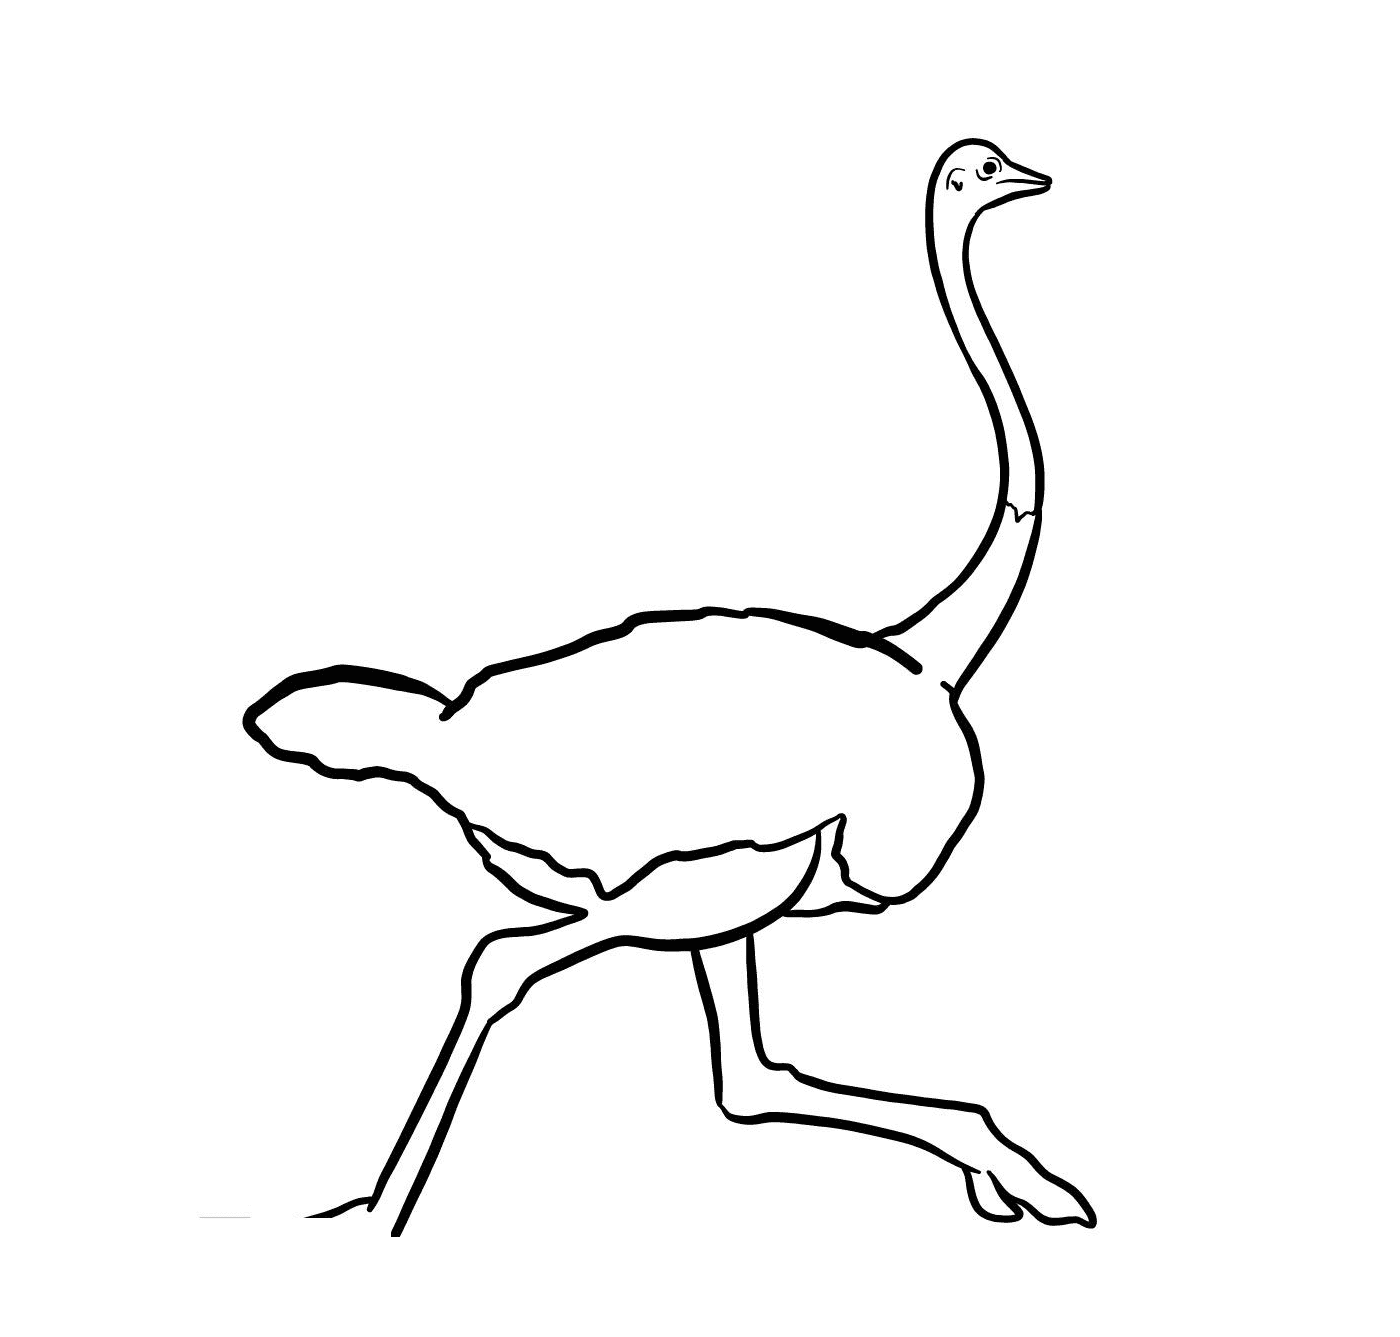  An ostrich running 